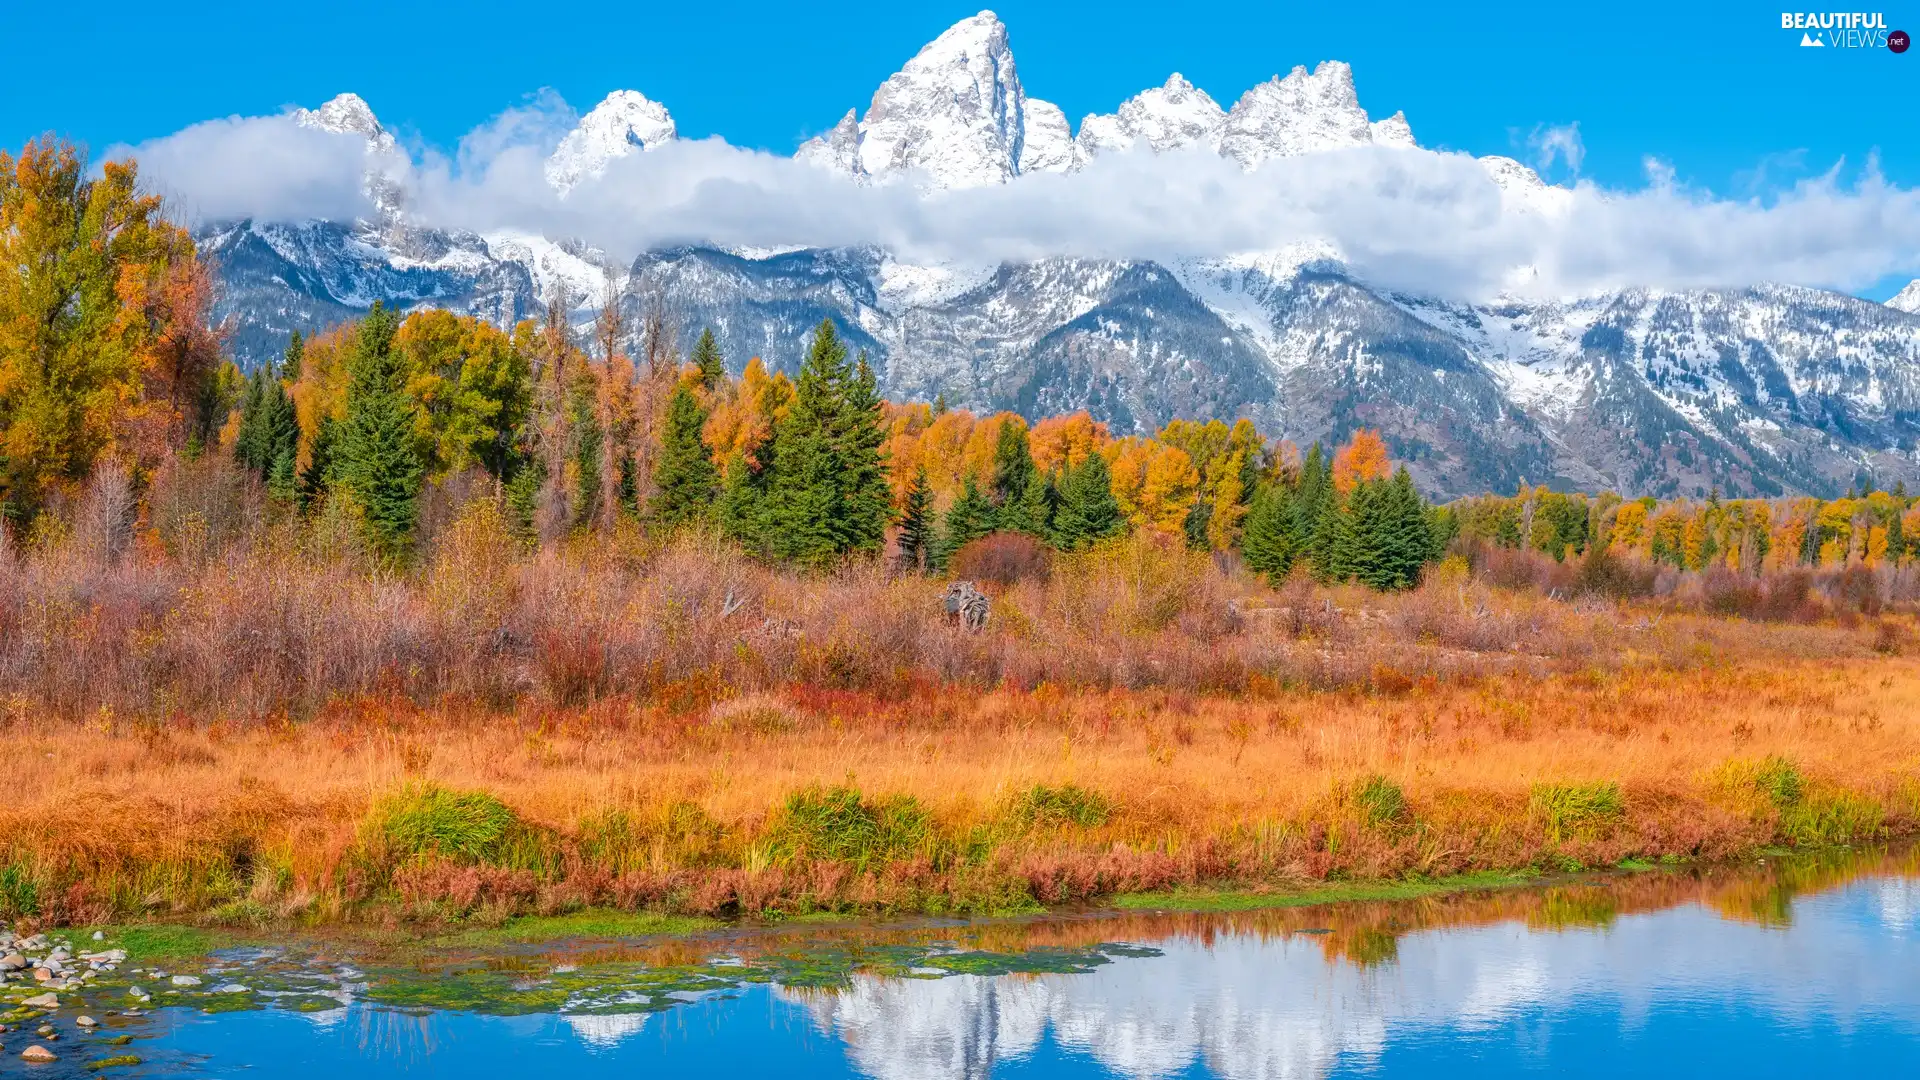 River, Teton Range Mountains, The United States, trees, State of Wyoming, Grand Teton National Park, autumn, viewes